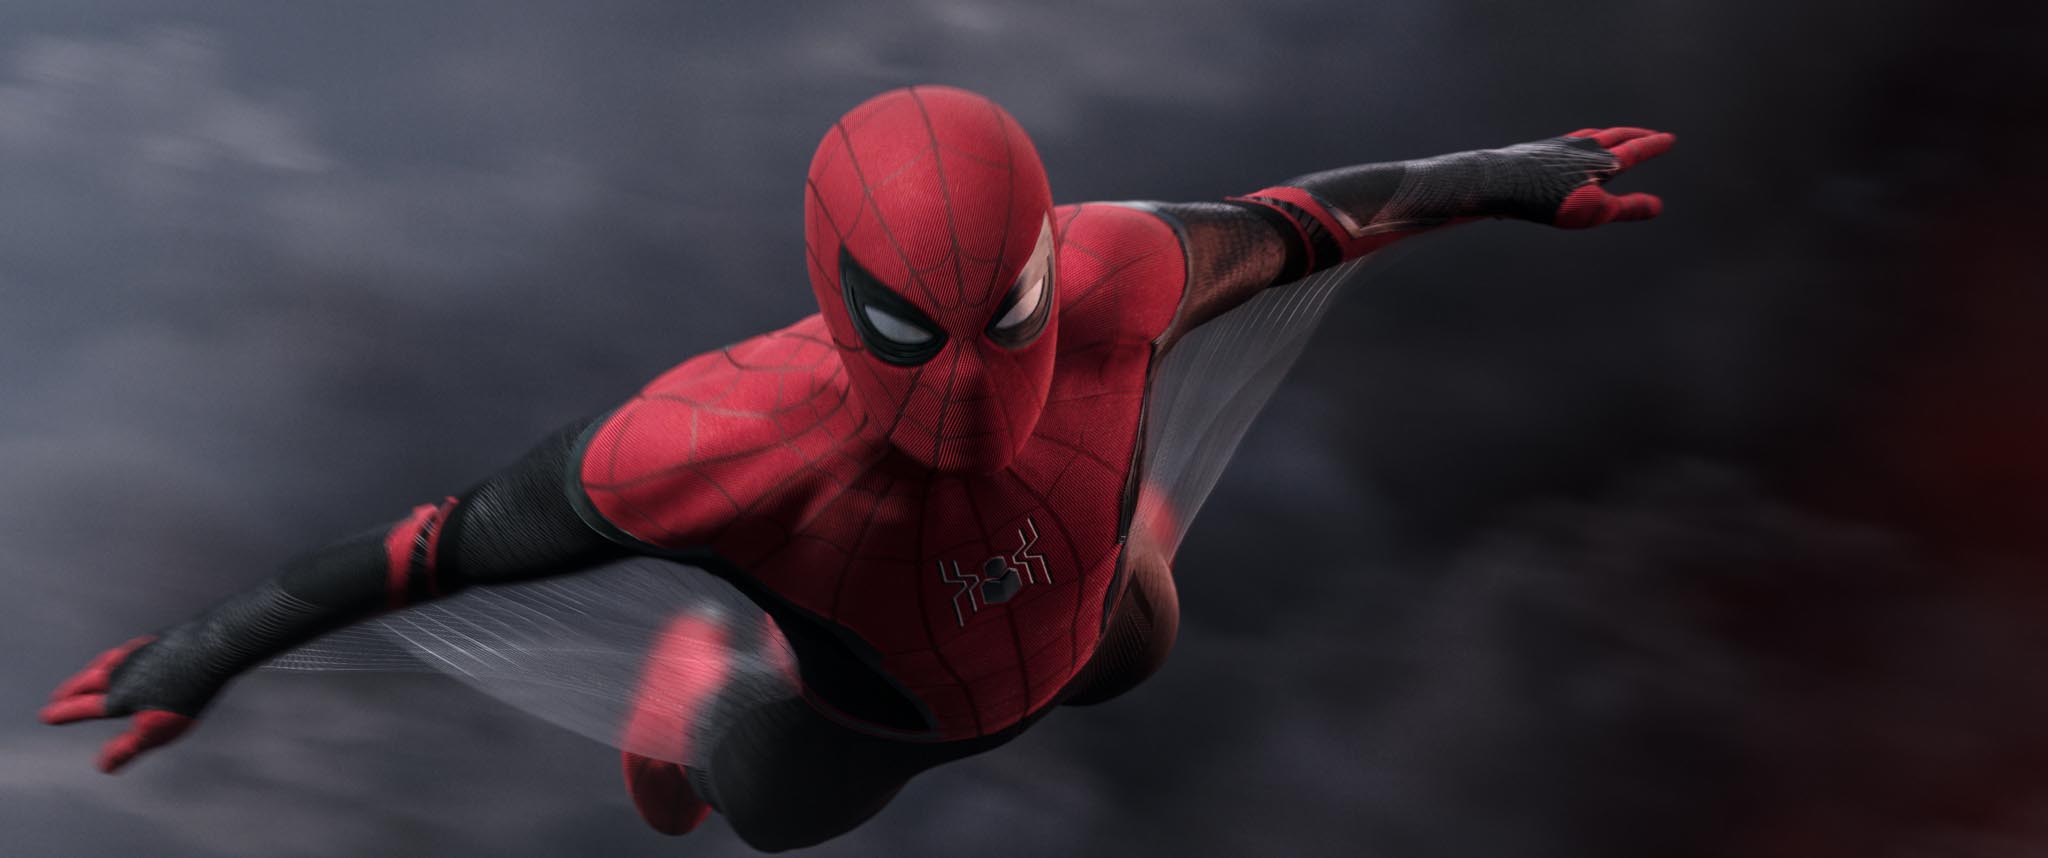 Spider-Man avisa de spoilers en su nuevo anuncio de ‘Spider-Man: lejos de casa’